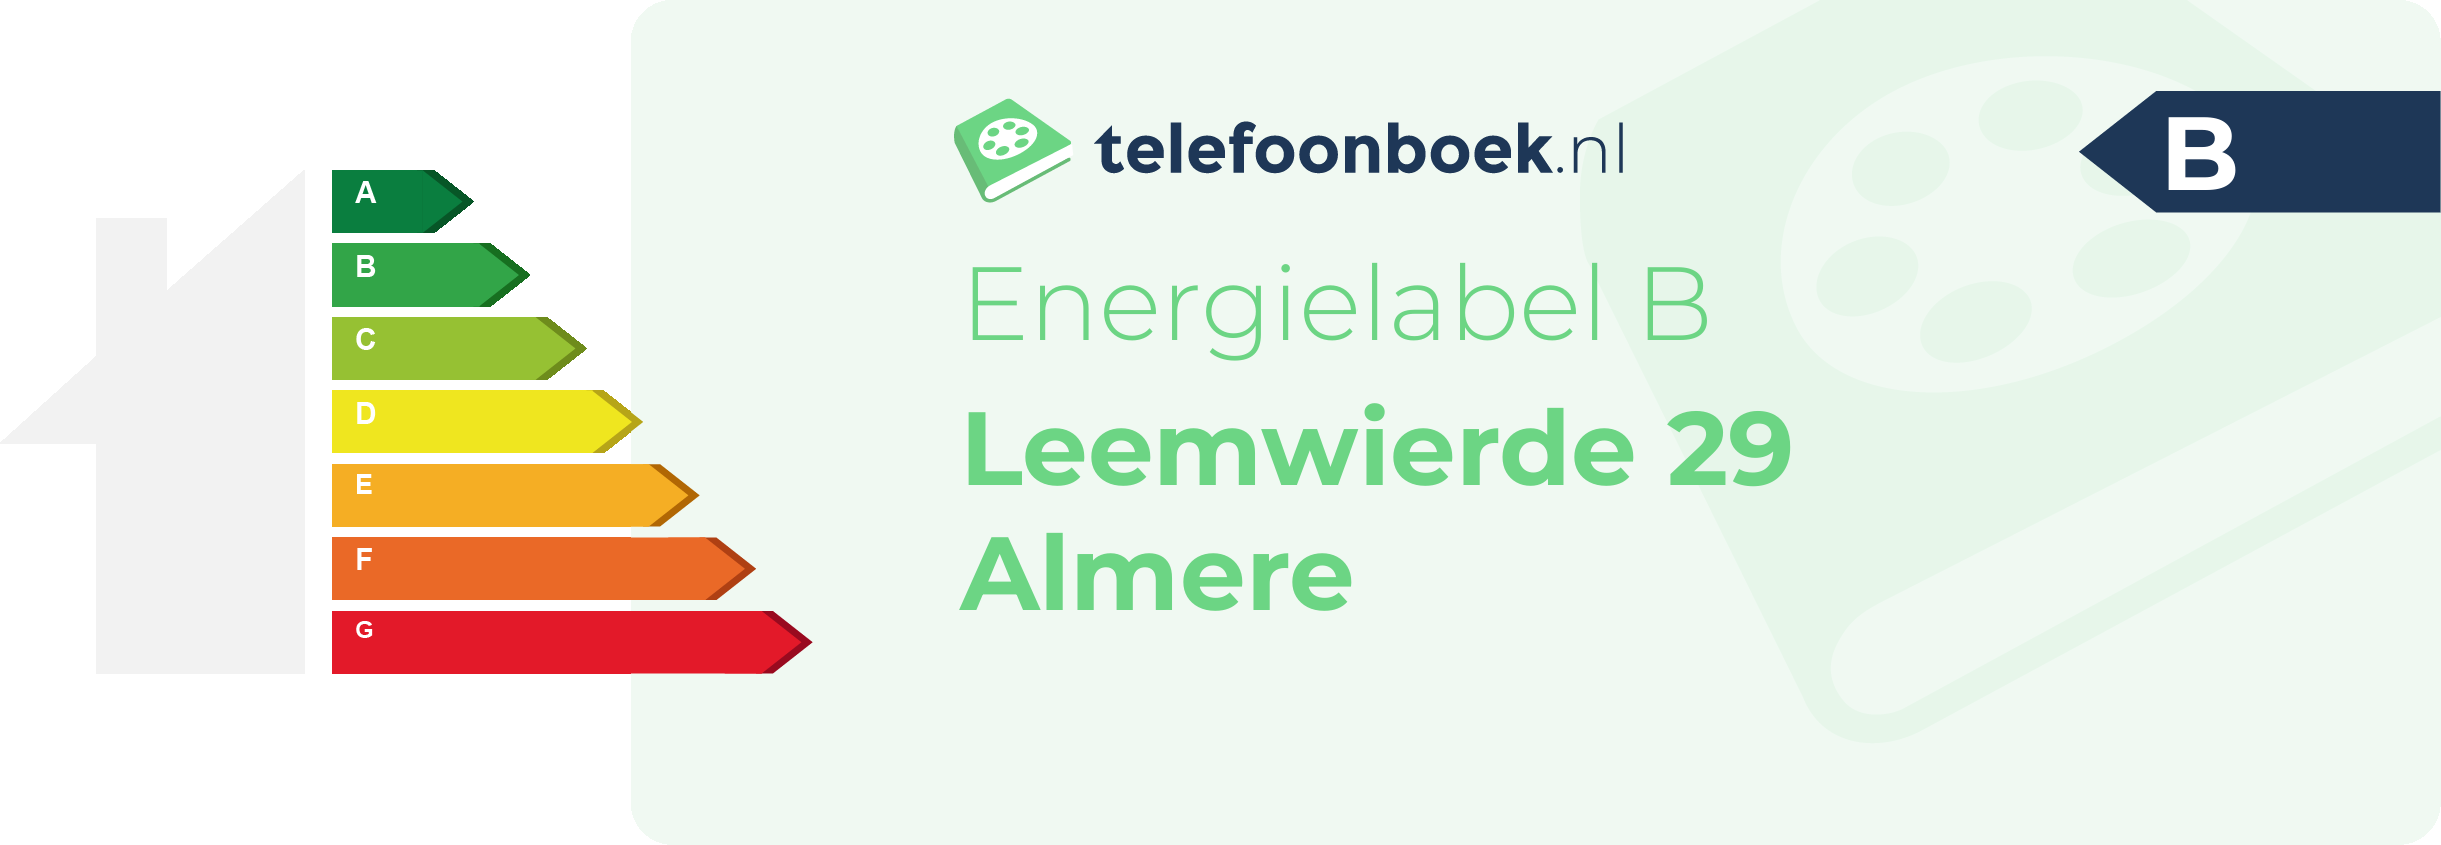 Energielabel Leemwierde 29 Almere